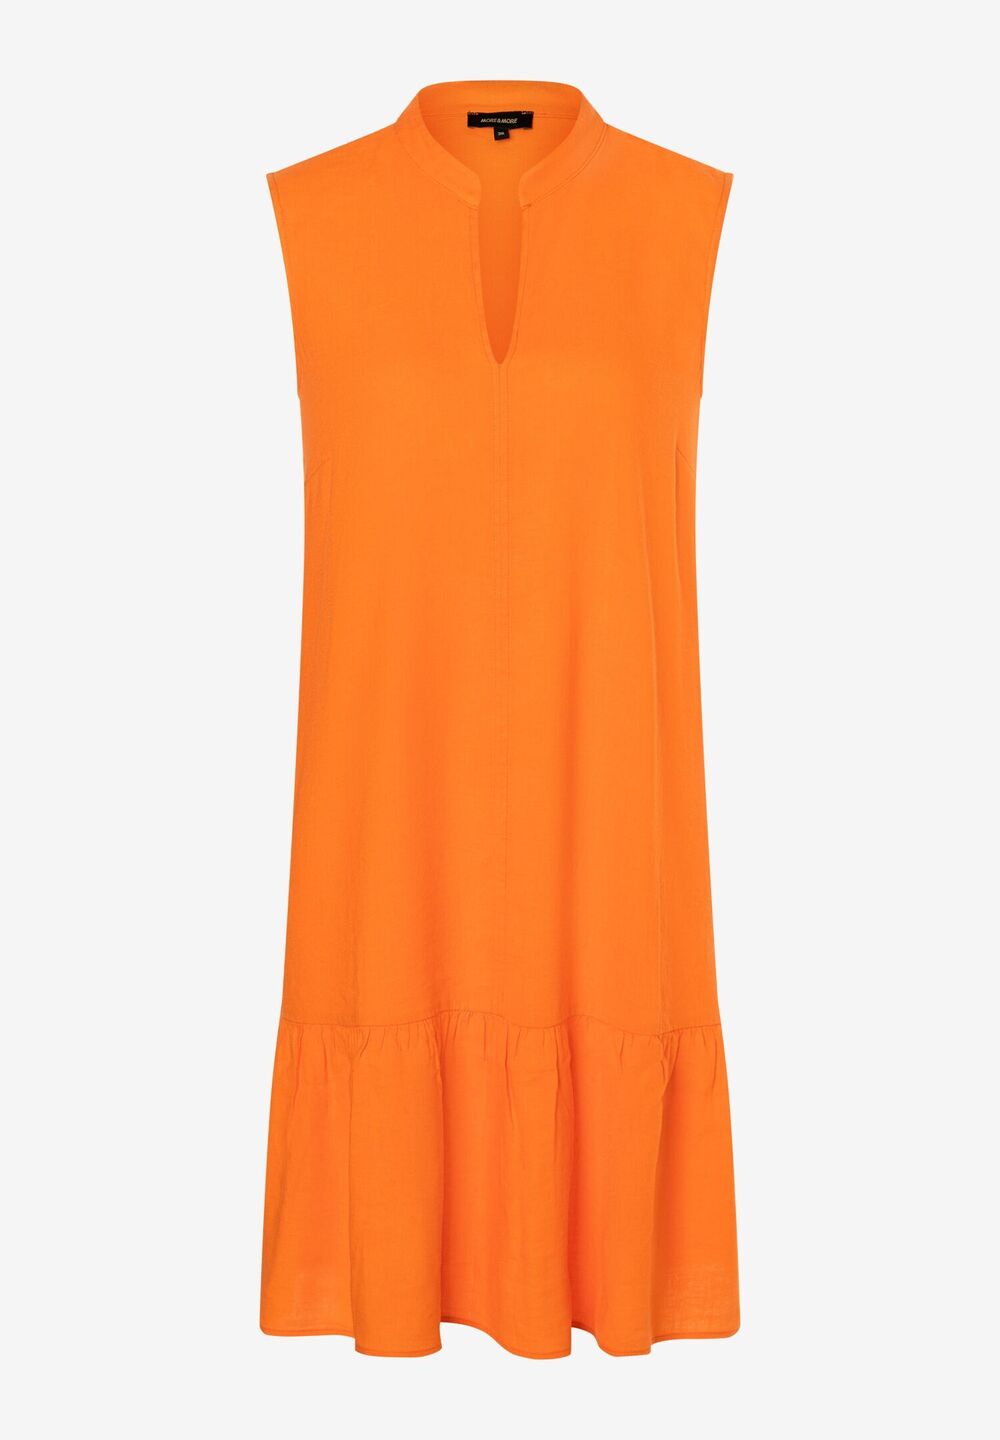 Leinen/Viskose Kleid, fresh orange, Sommer-Kollektion, orange Detailansicht 2